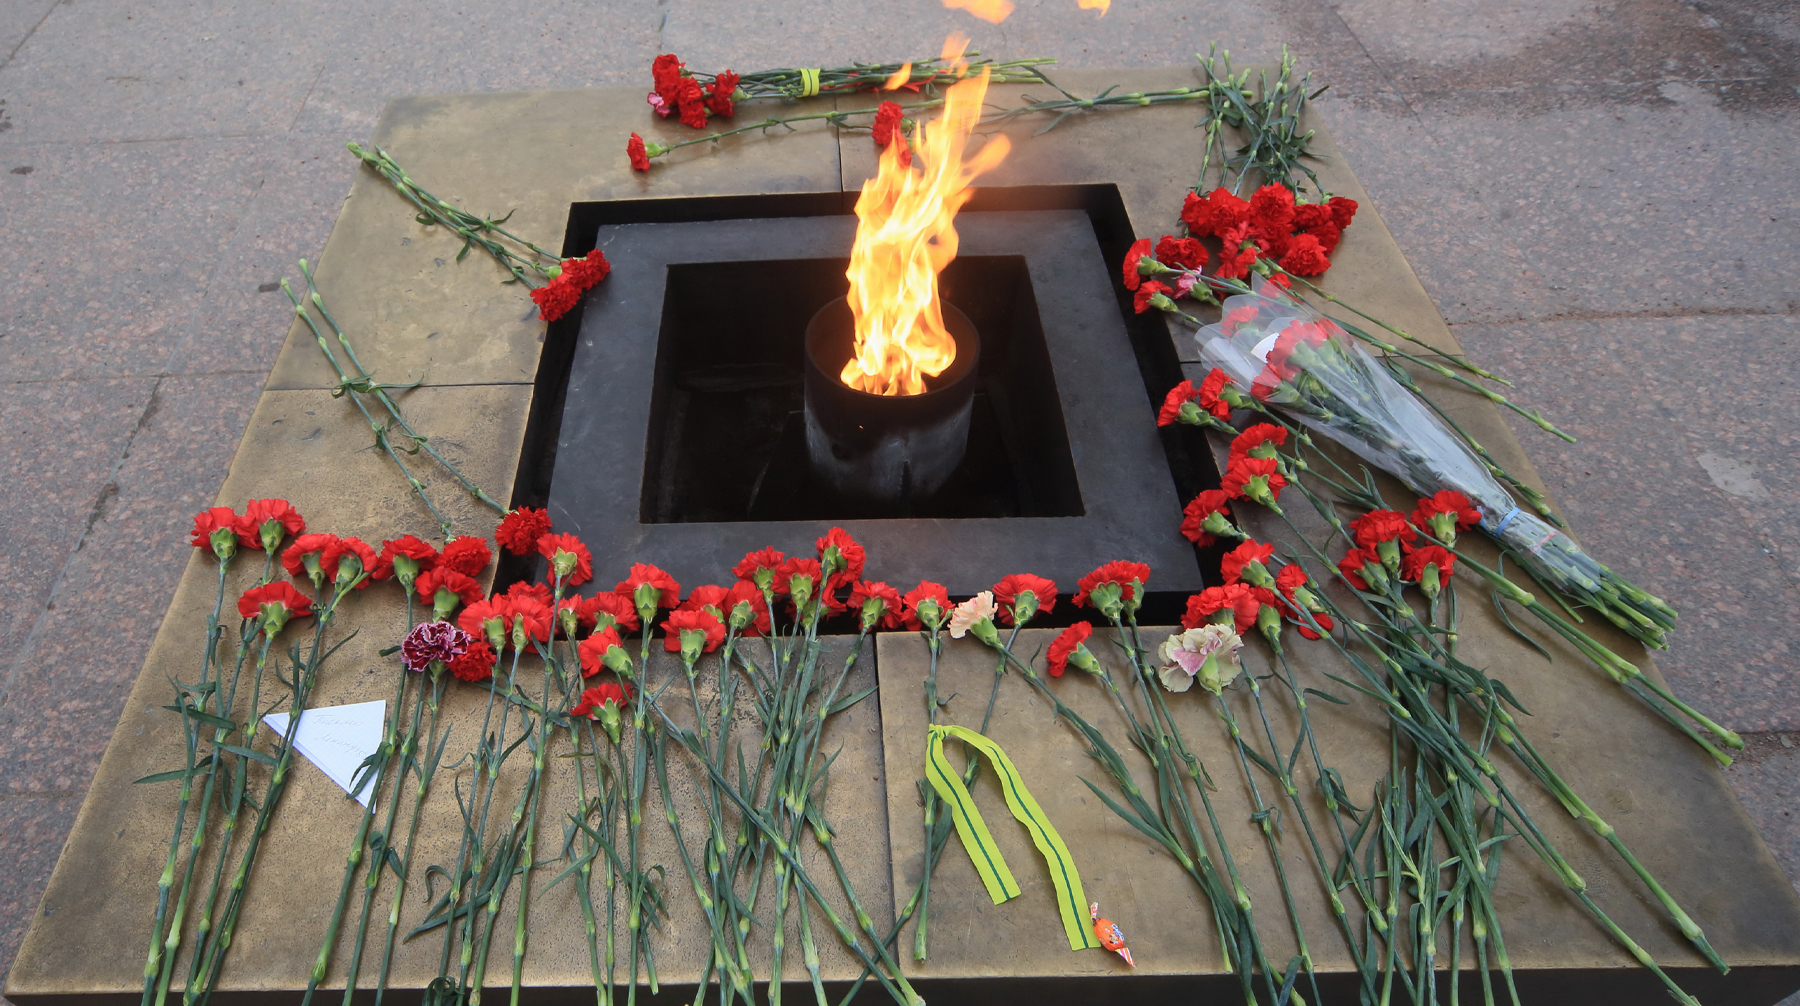 Ветеран предложил отложить на более позднюю дату шествие «Бессмертного полка» Фото: © Global Look Press / Zamir Usmanov